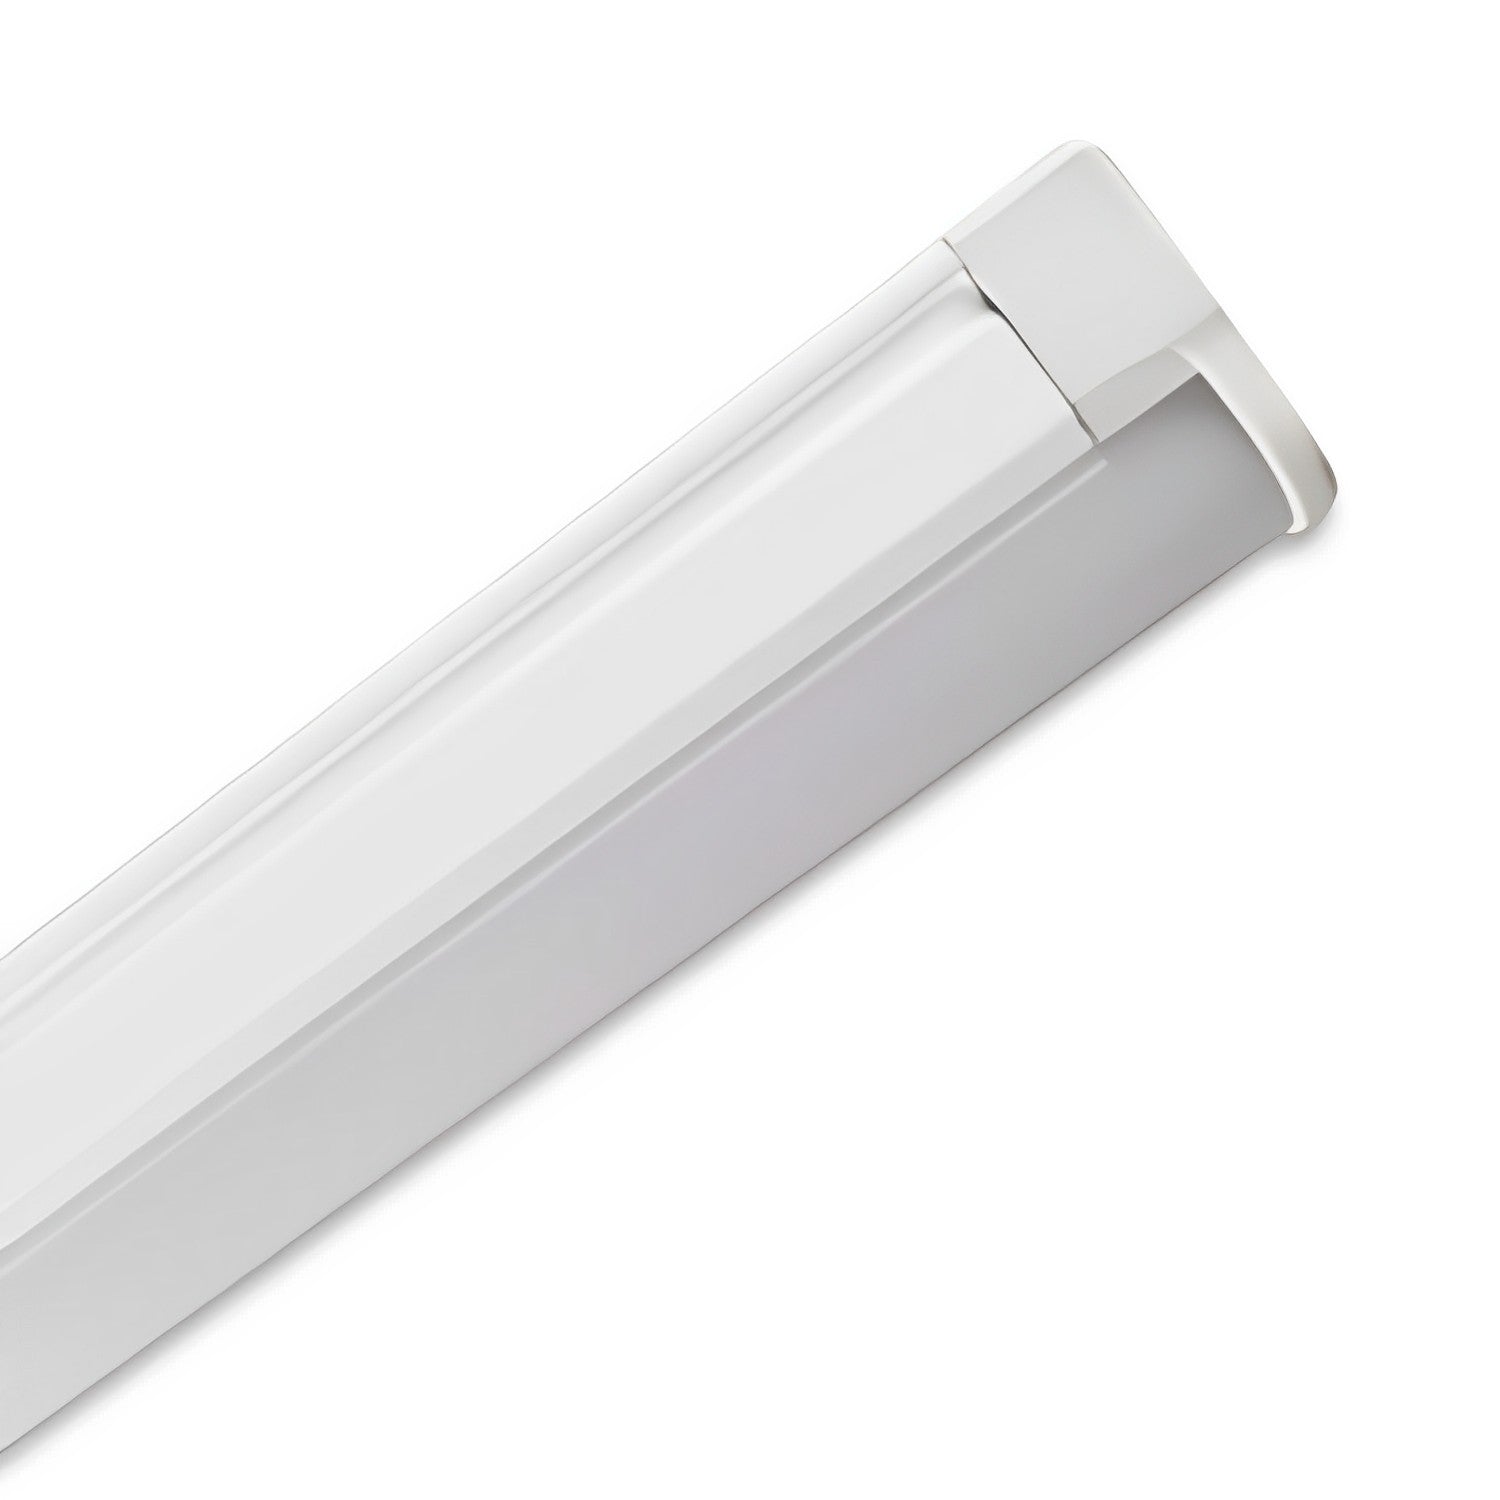 Image of 39.37 Inch LED Under Cabinet Light Bar or led under cabinet lighting